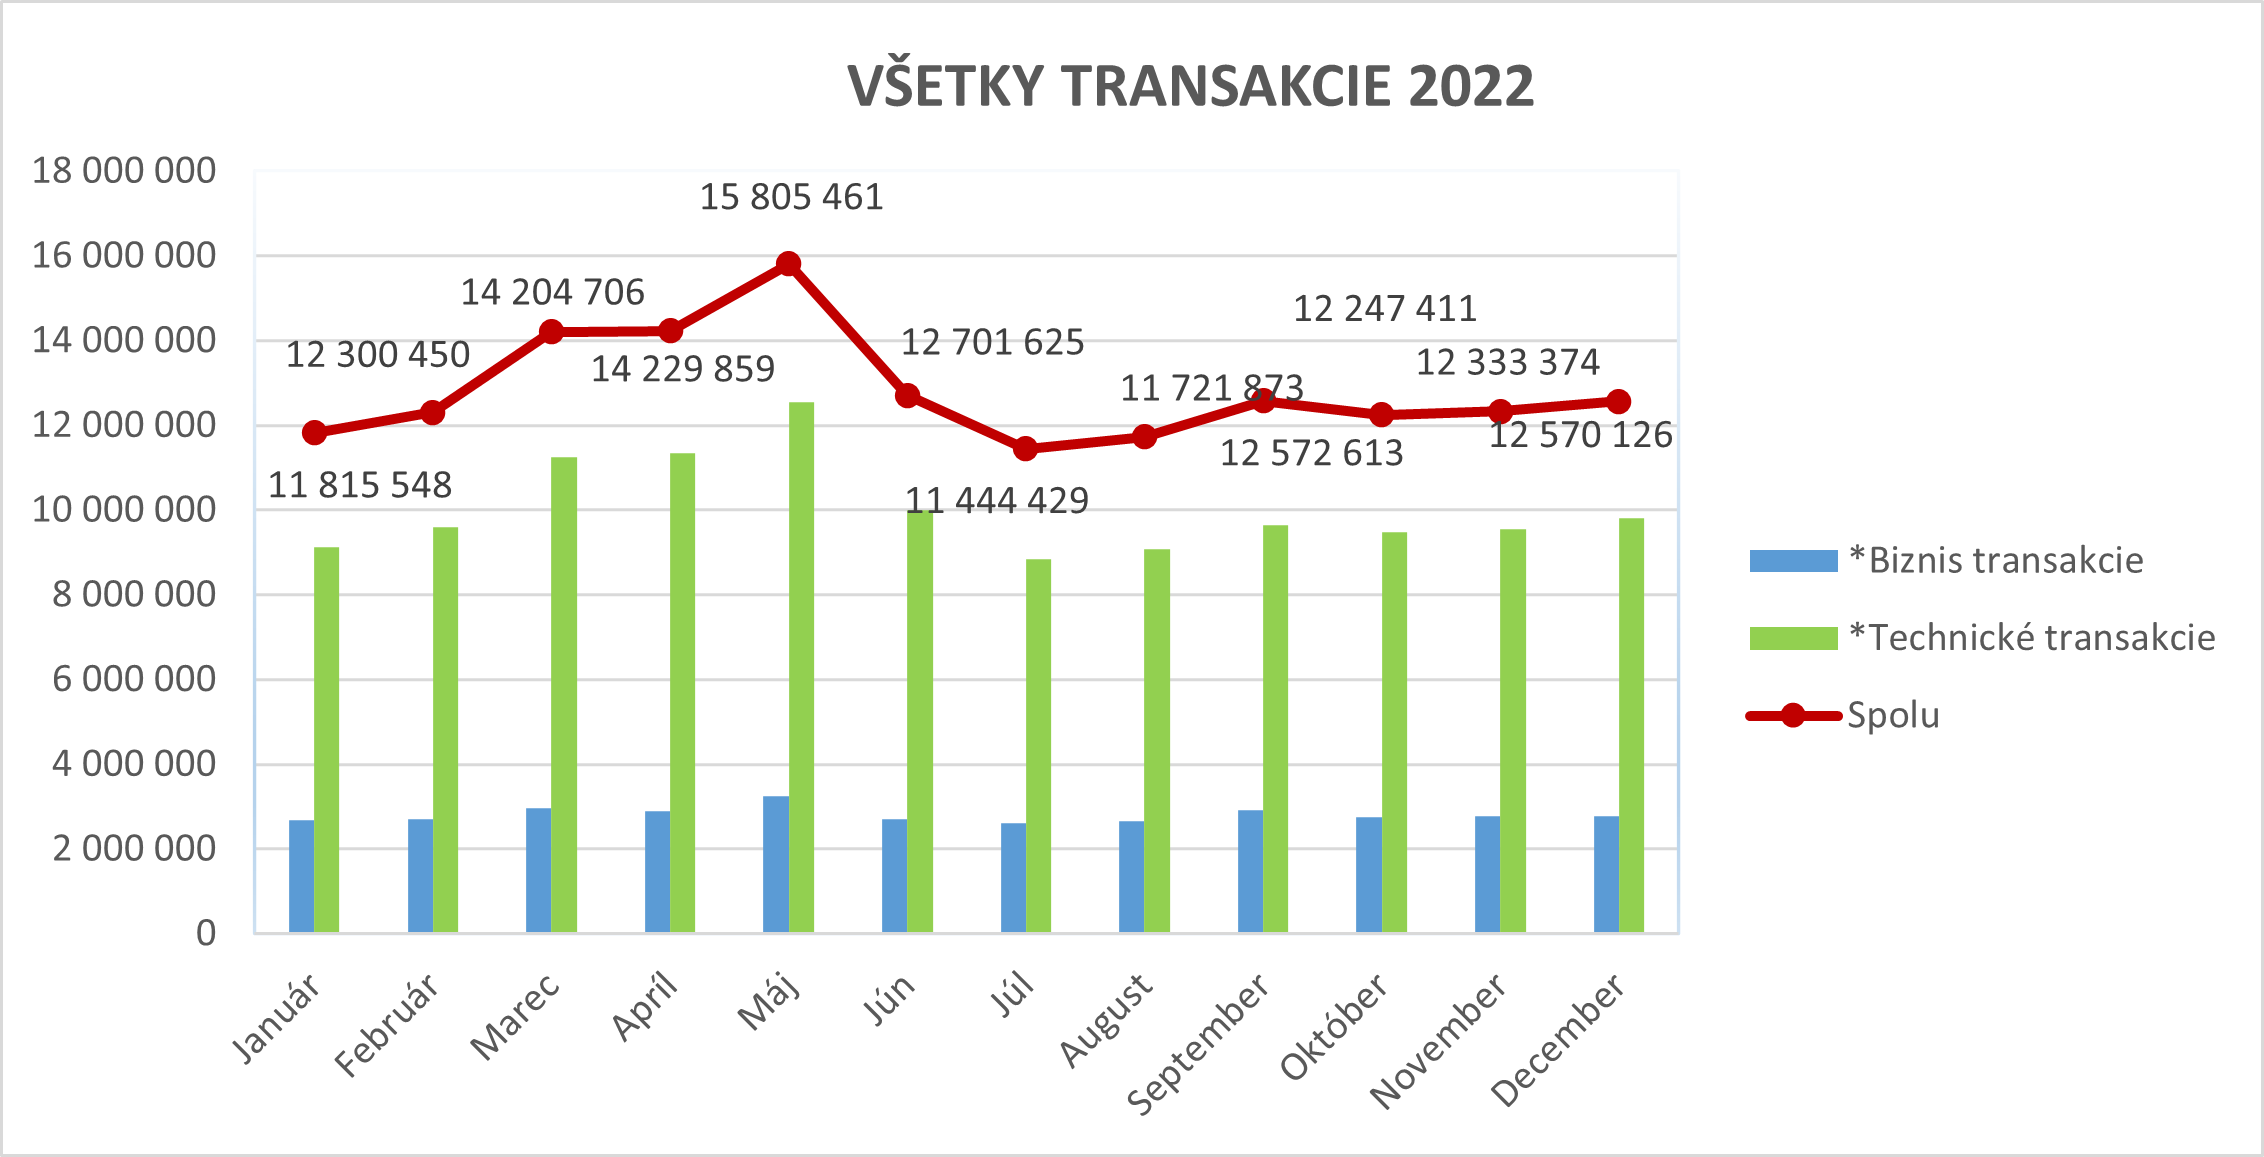 Ilustračný stĺpcový graf zobrazujúci všetky transakcie za rok 2022.